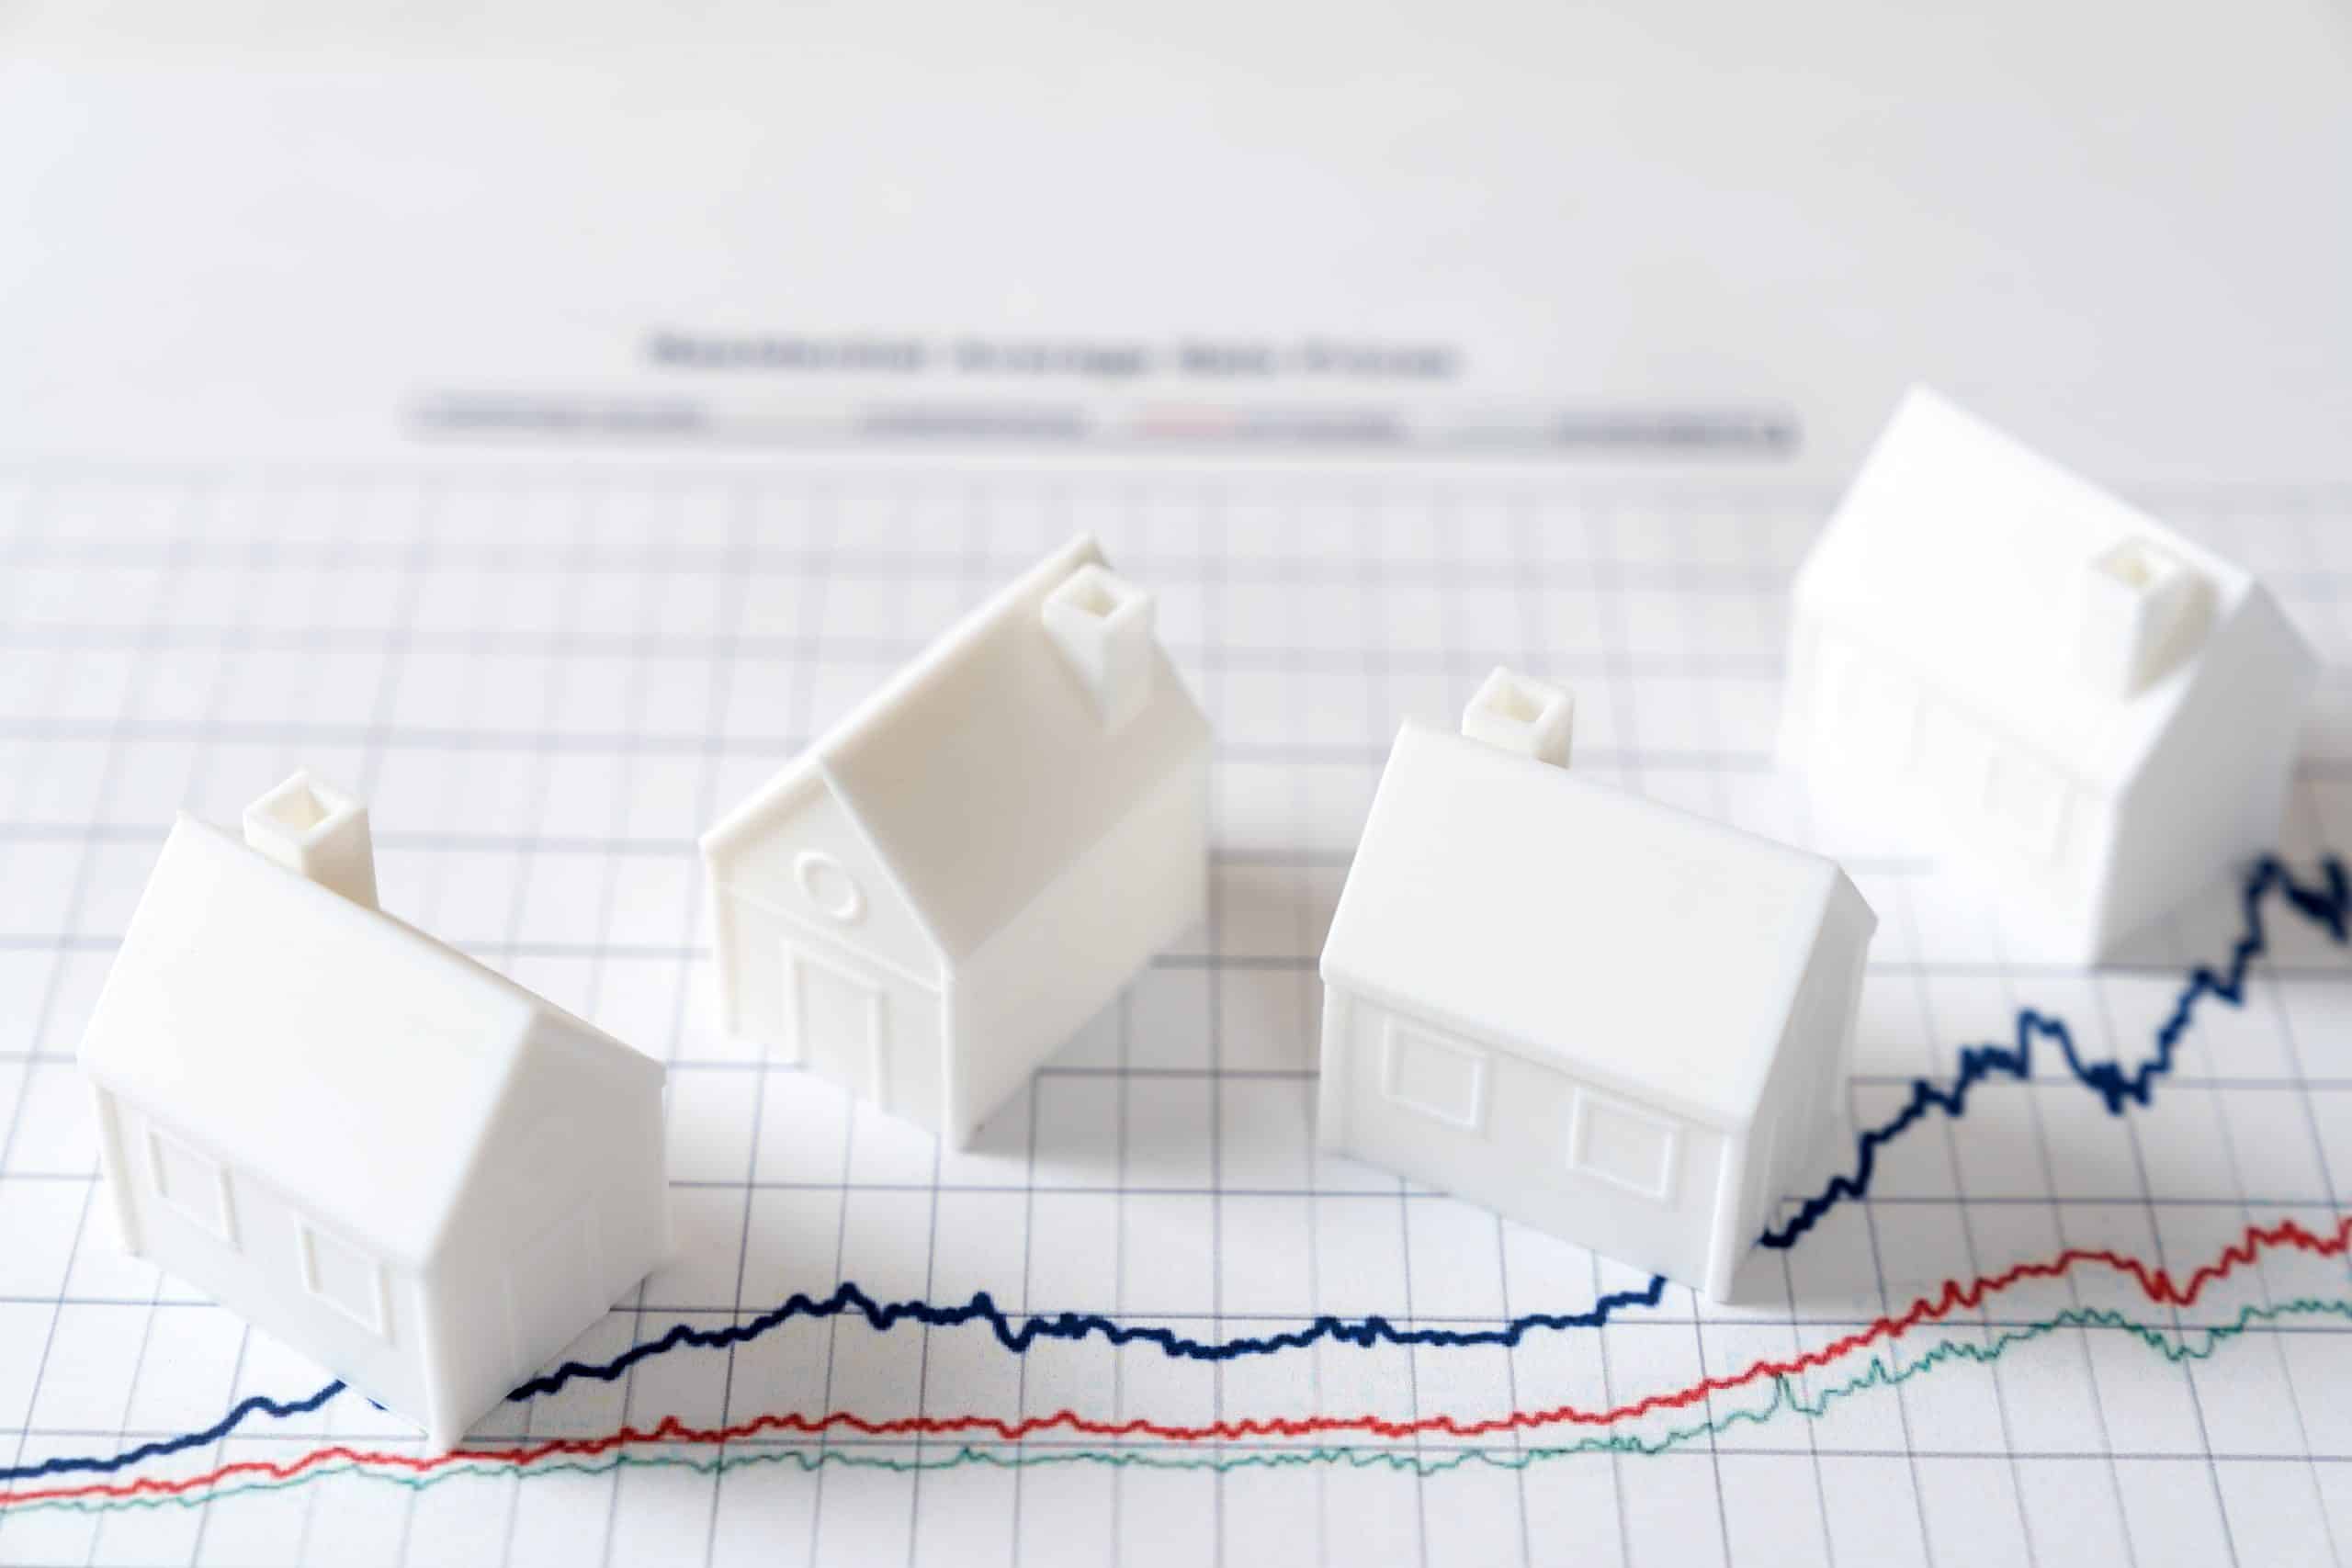 Les prix immobiliers continuent de décroître d’après la dernière étude de Meilleurs Agents